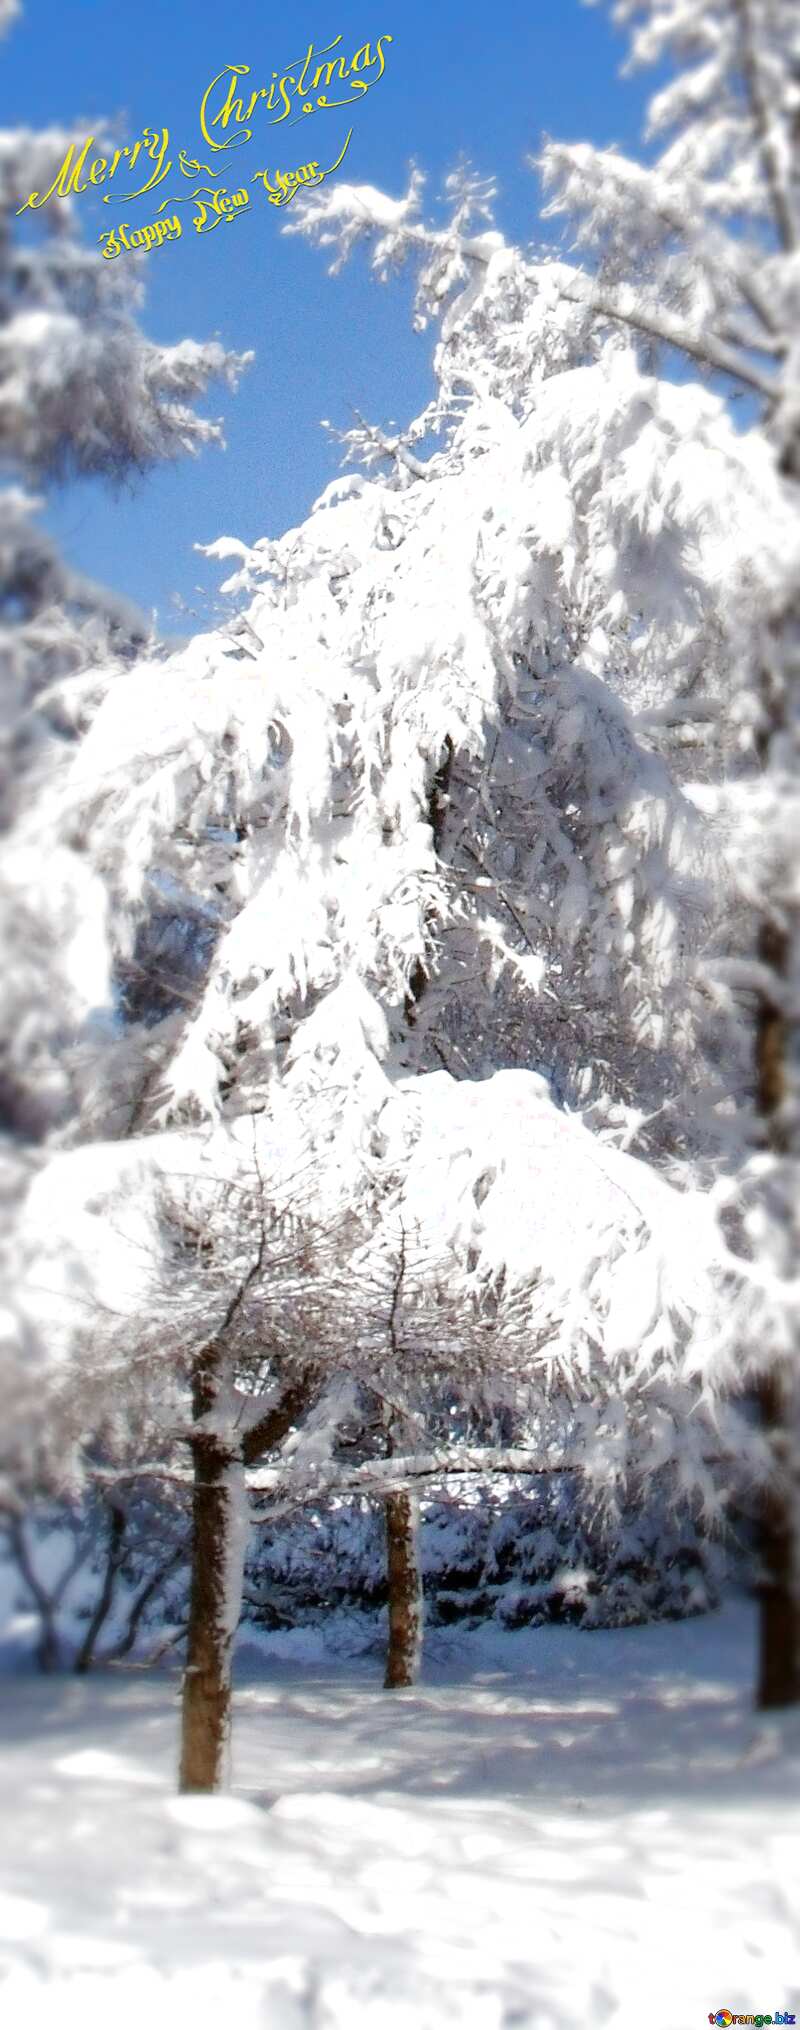 лес на деревьях лежит белоснежный, блестящий, хрупкий, холодный снег. №10543